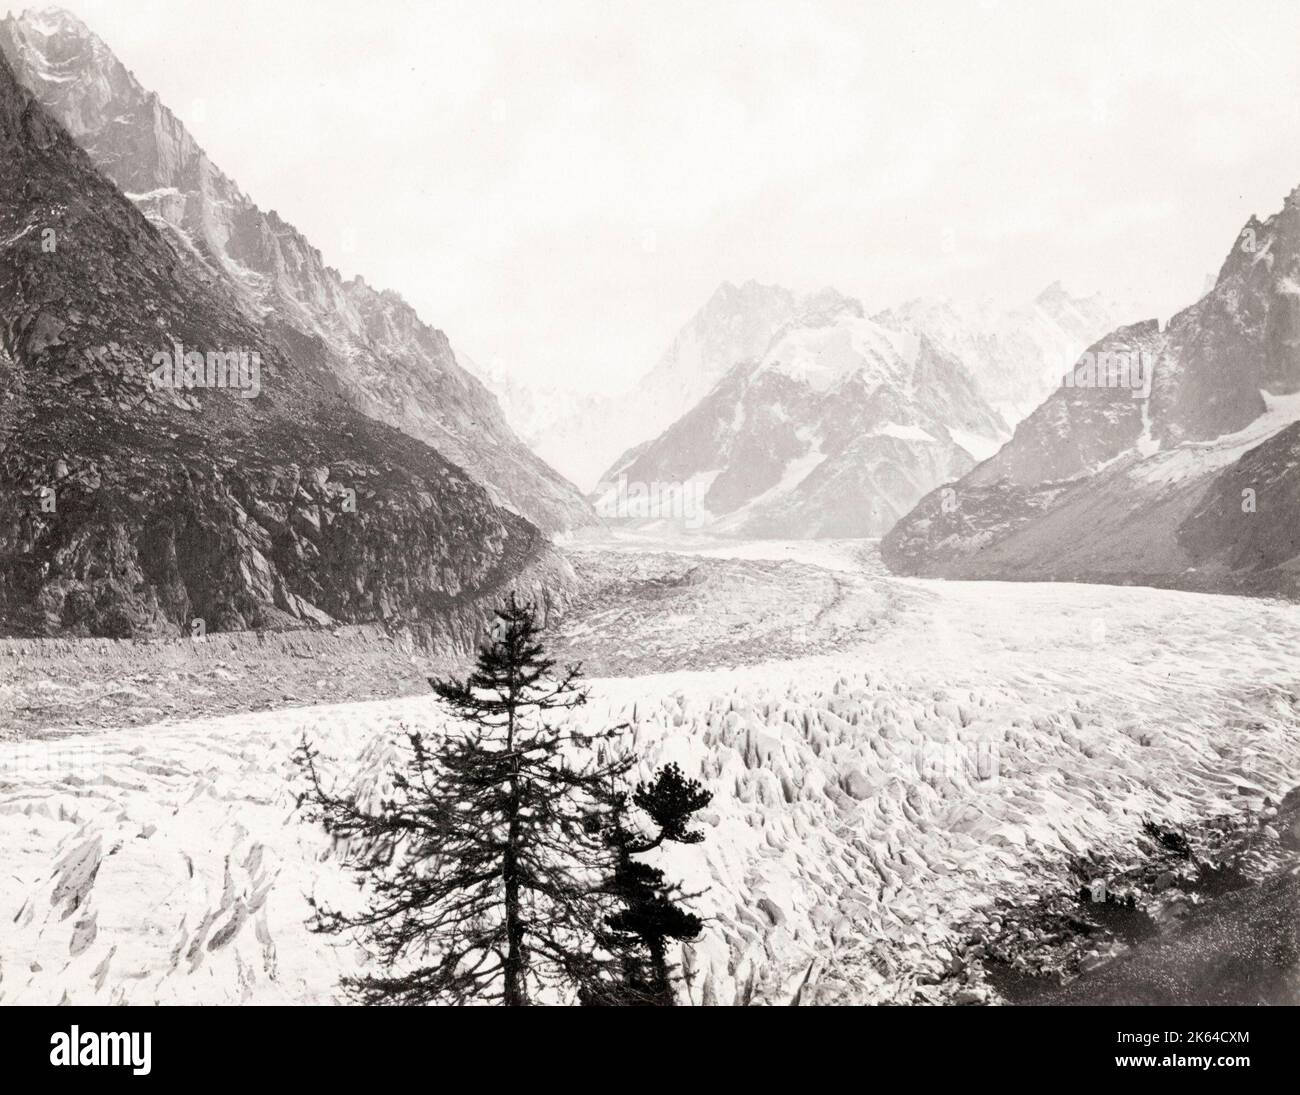 19th century vintage photograph: Mer de Glace, glacier, Chamonix, France, Alps. Mont Blanc. c.1880. Stock Photo